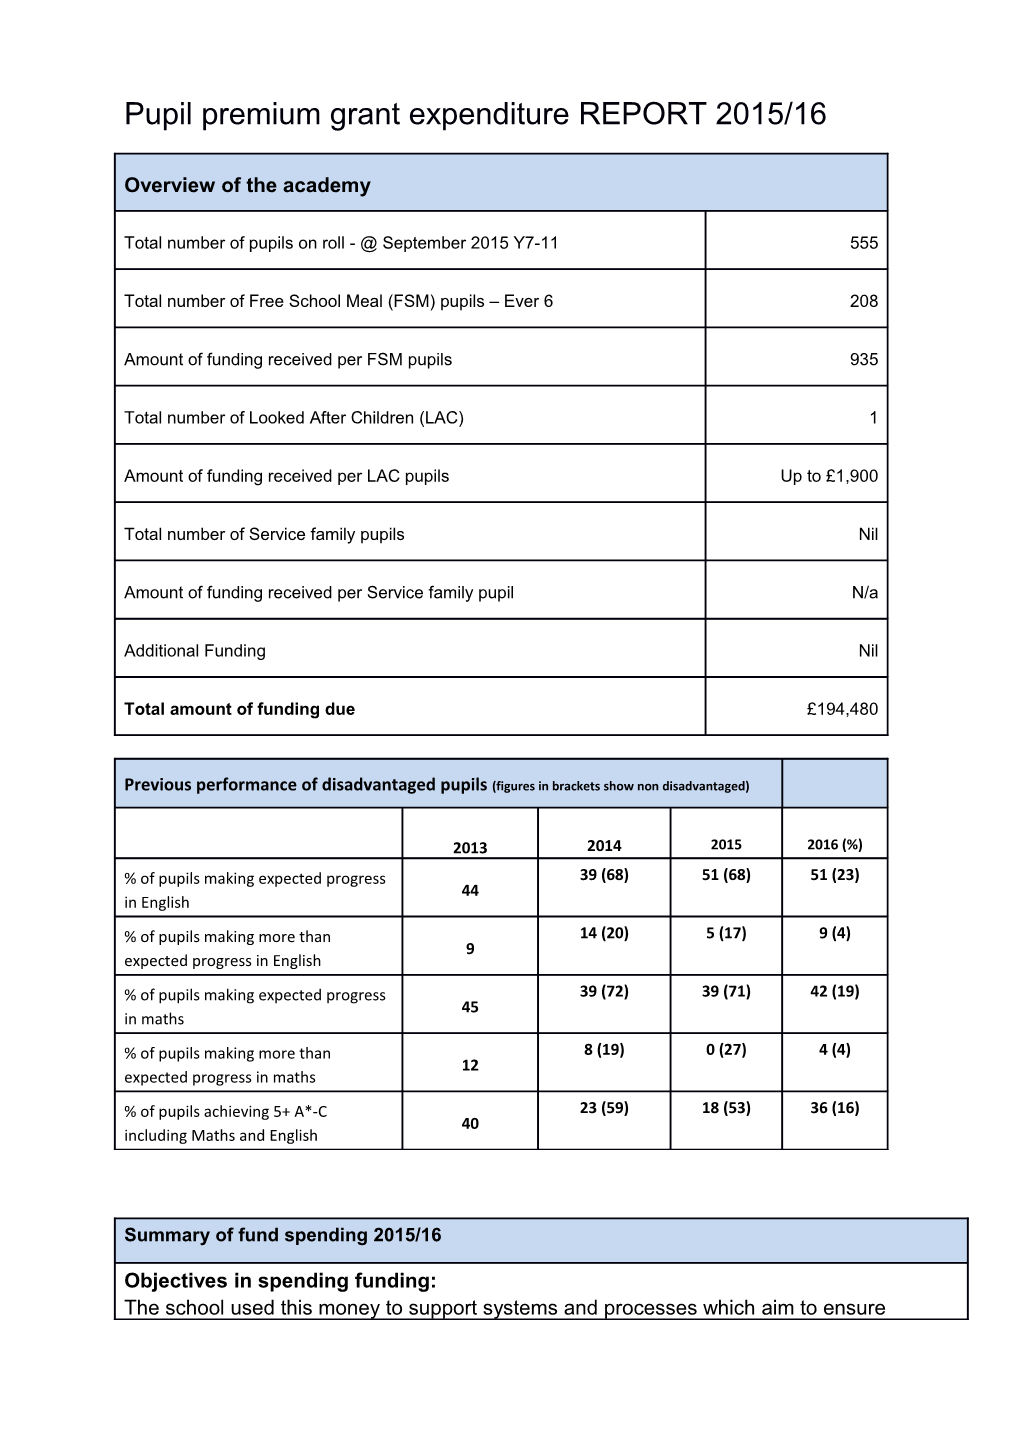 Pupil Premium Grant Expenditure REPORT 2015/16